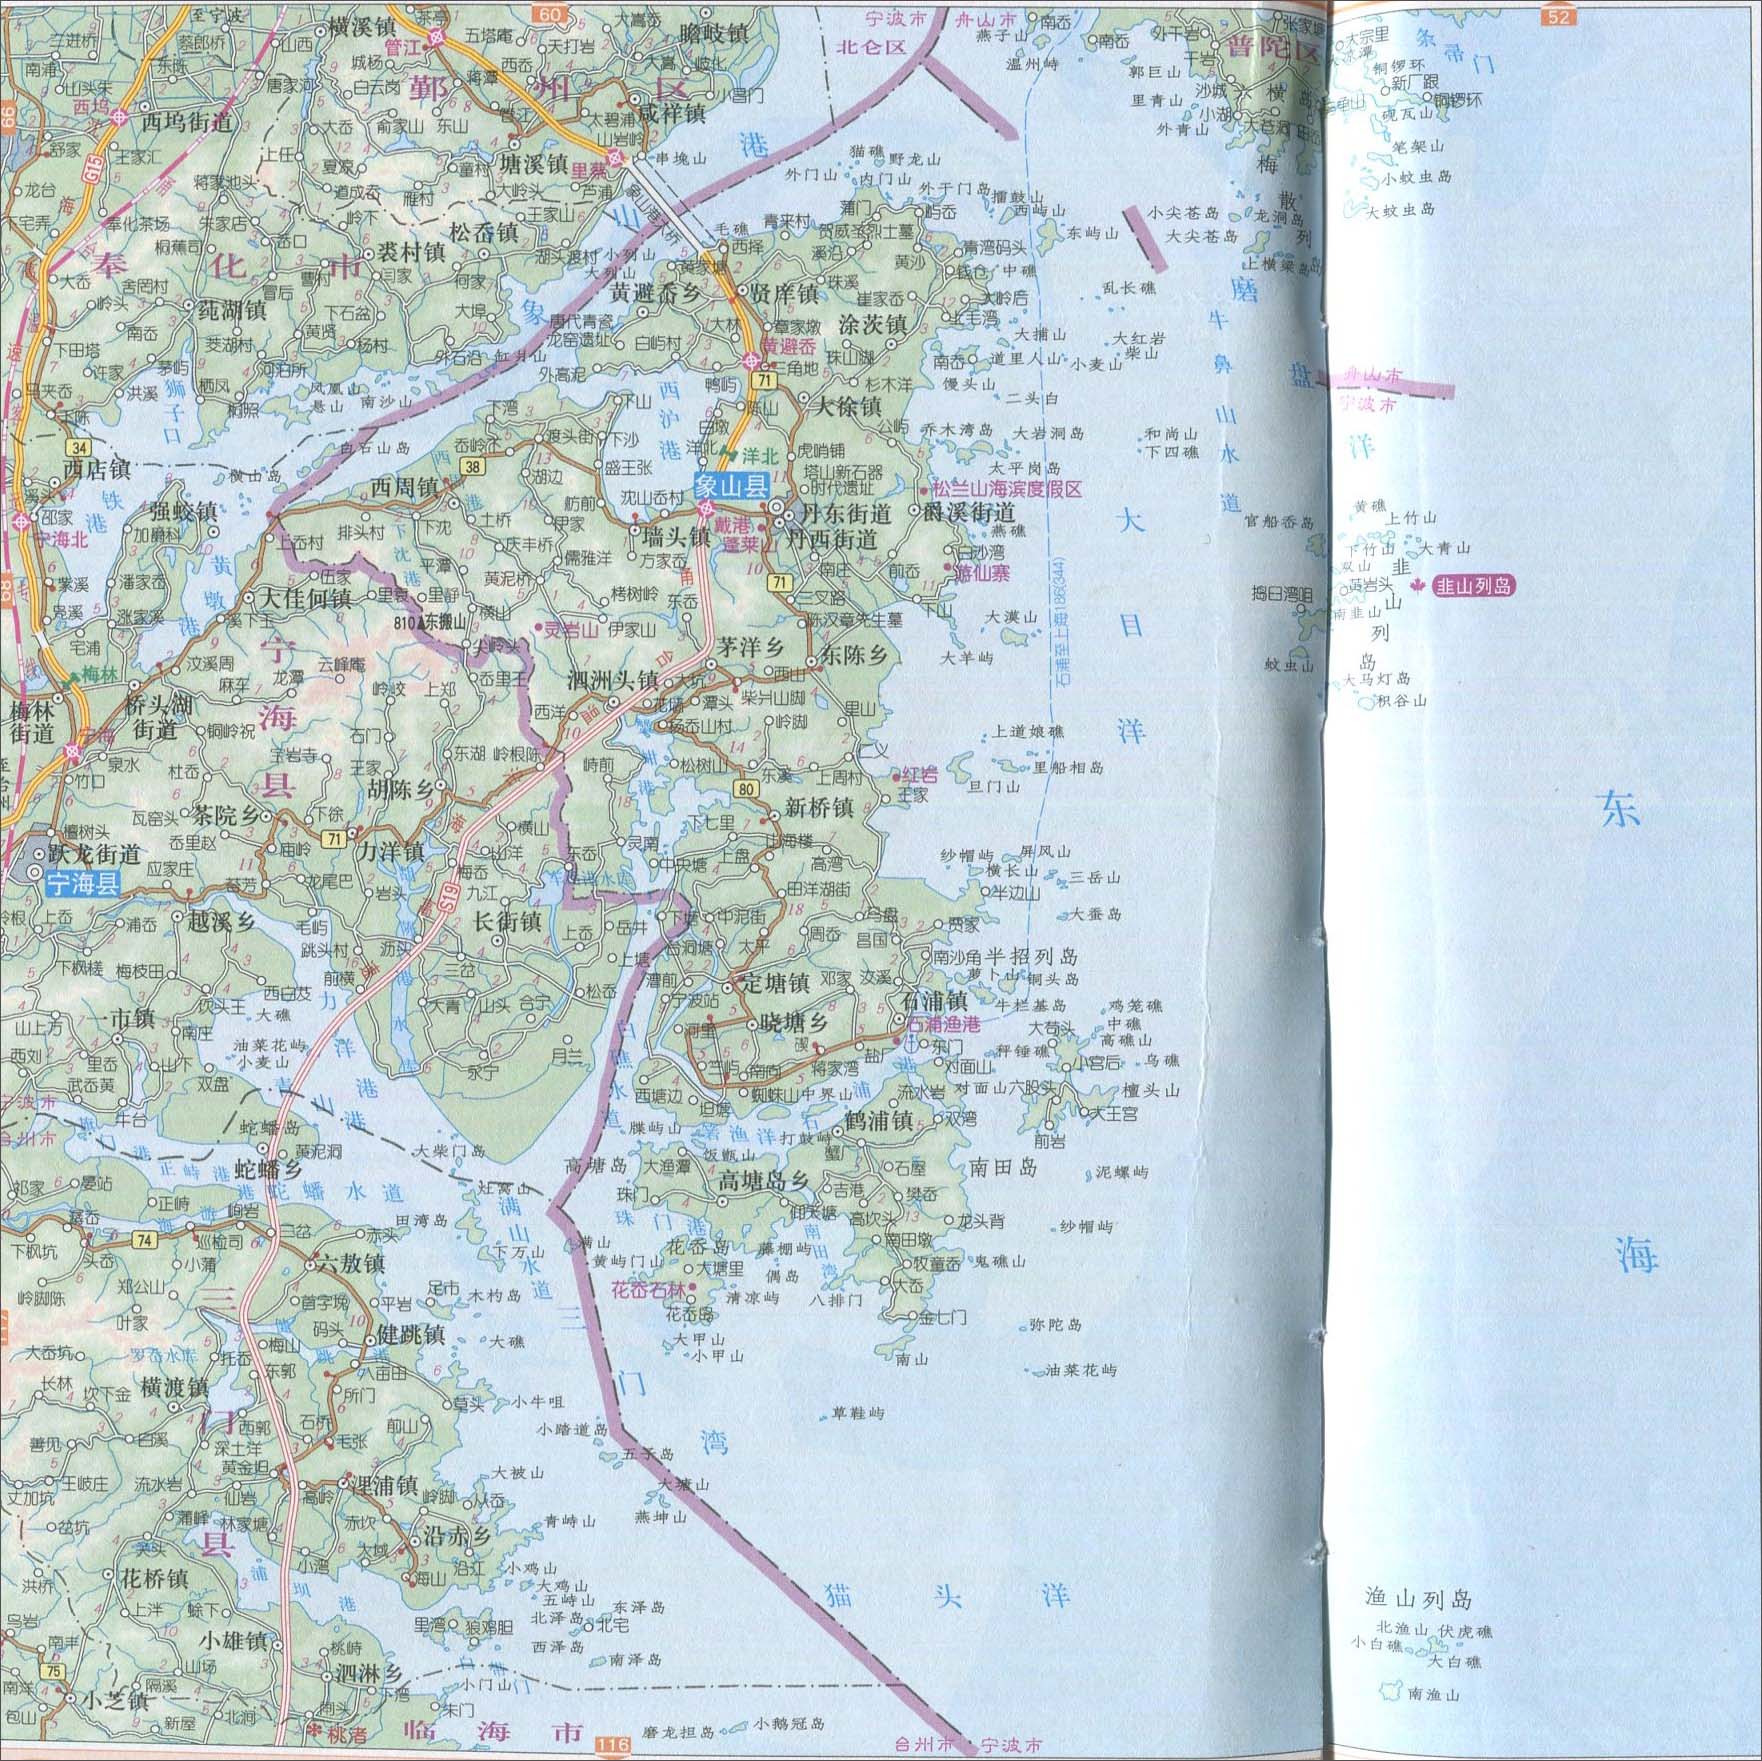 小编位各位地理科考生和老师整理2014年的象山县地图,所处省份:宁波市图片